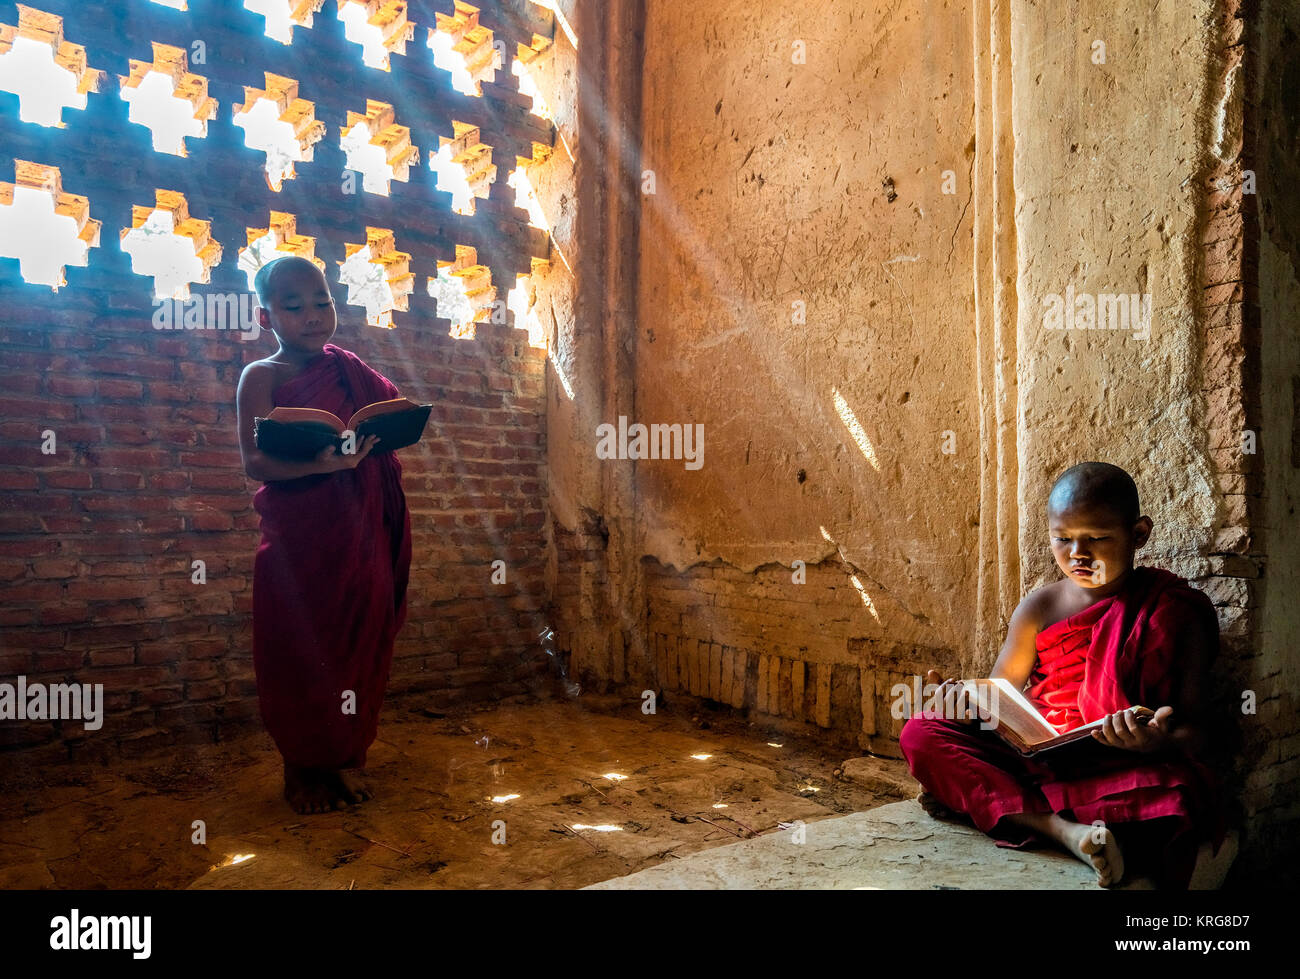 Image libre de droit stock de haute qualité de moine novice bouddhiste en pagode, Bagan, myanmar Banque D'Images